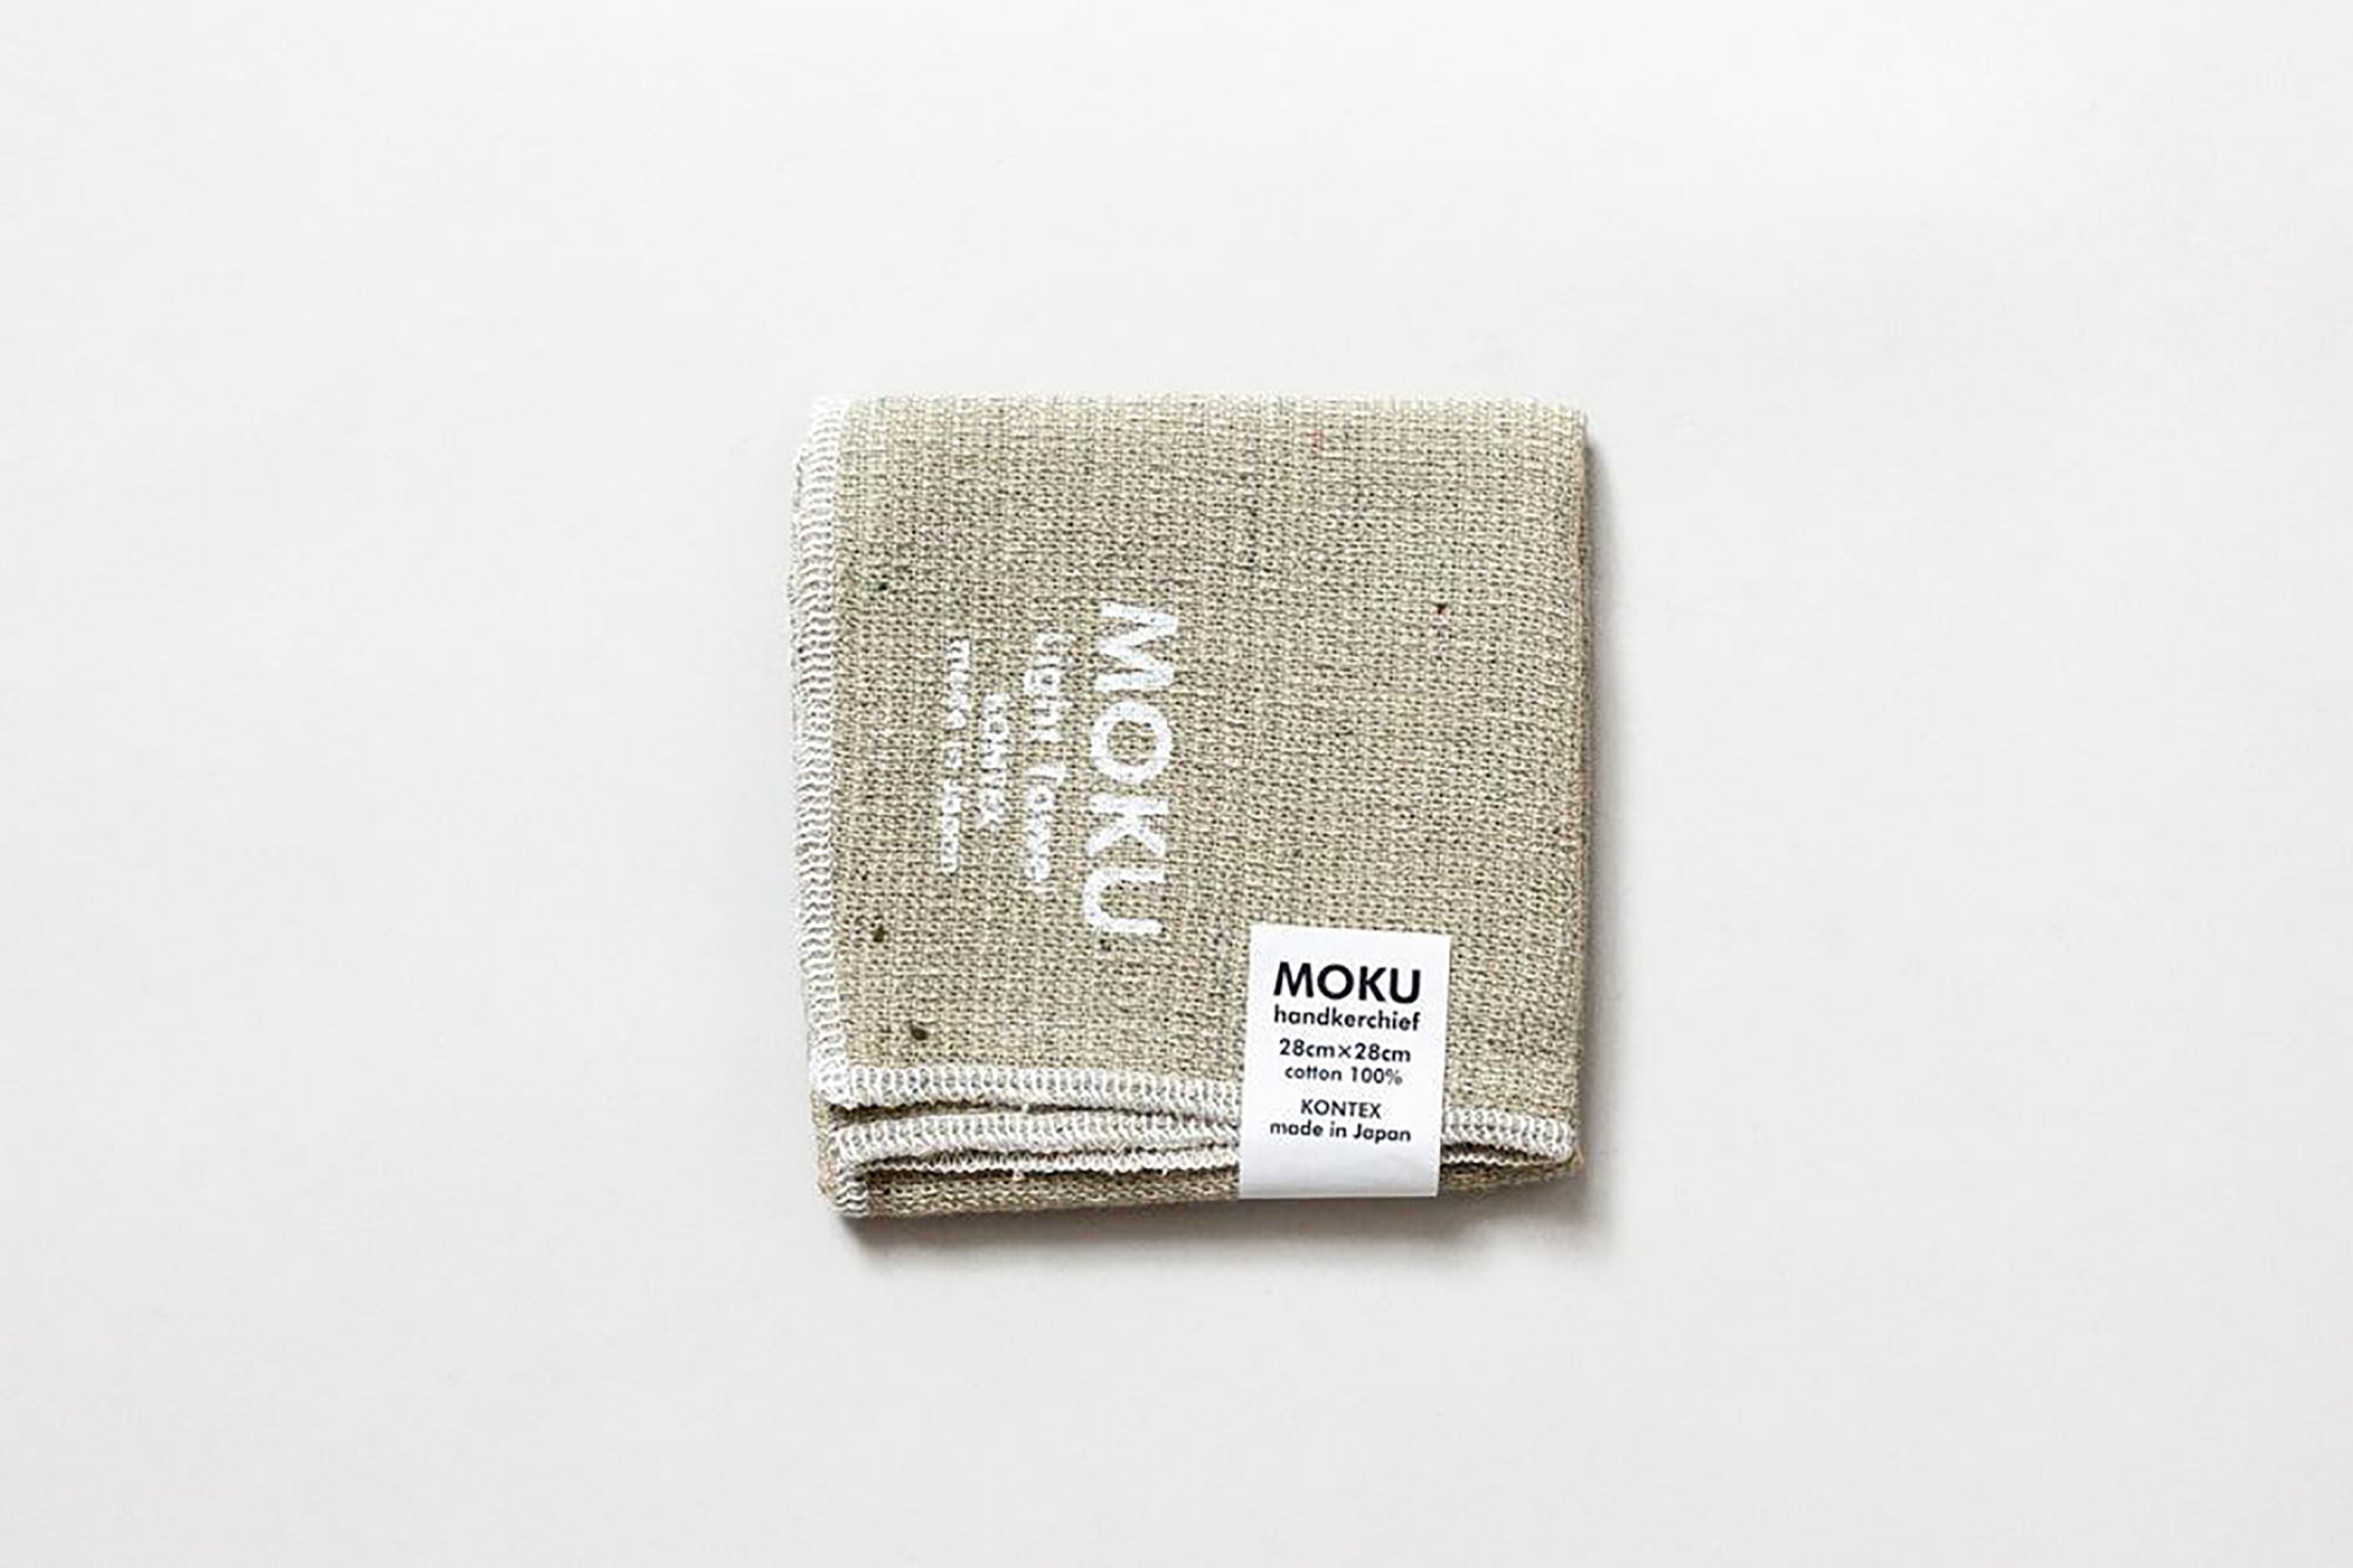 Morihata-Moku Light Towel // Khaki